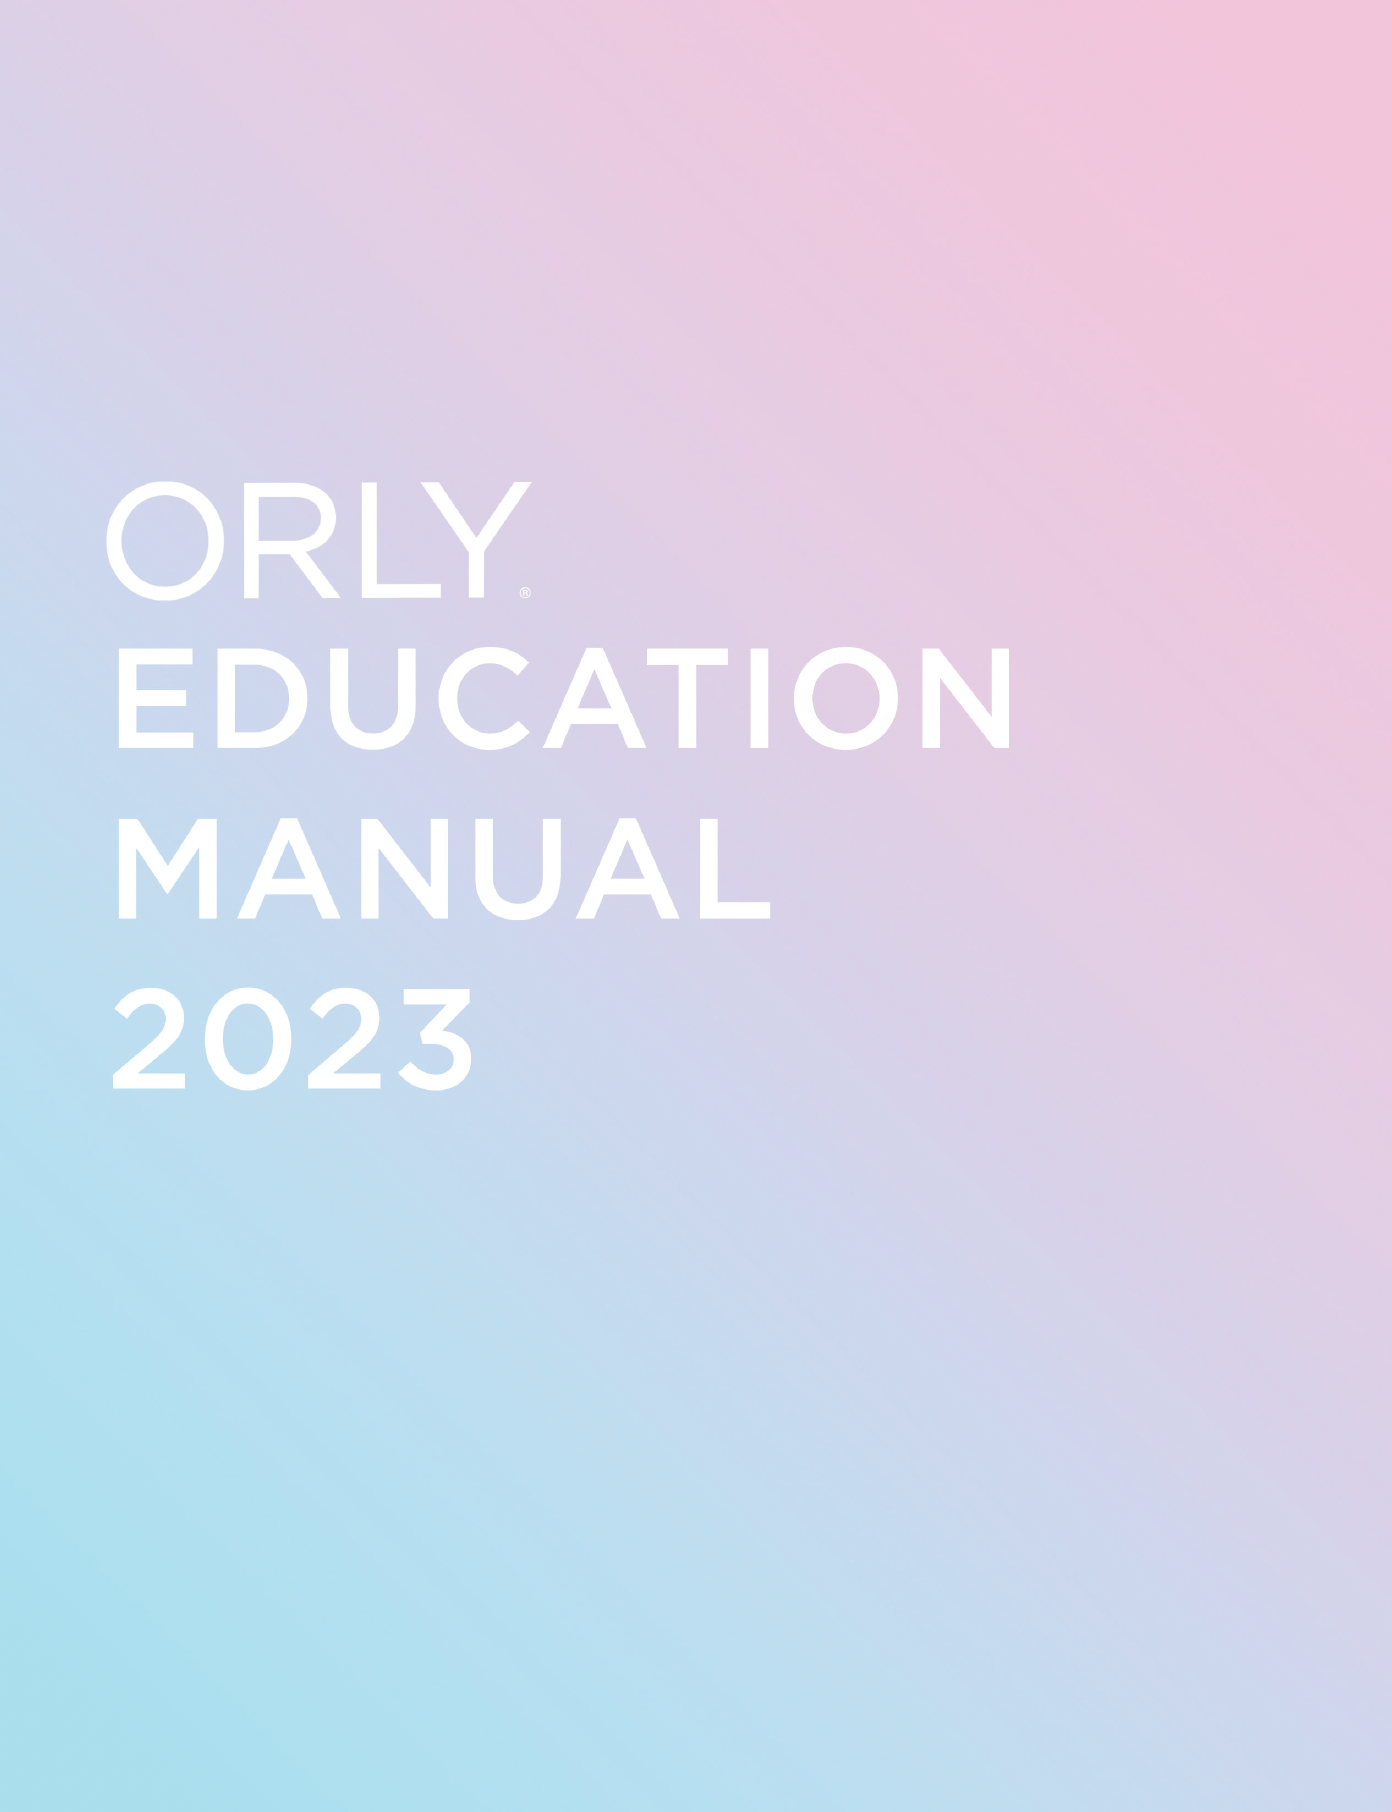 ORLY Education Manual 2023 (e-book)